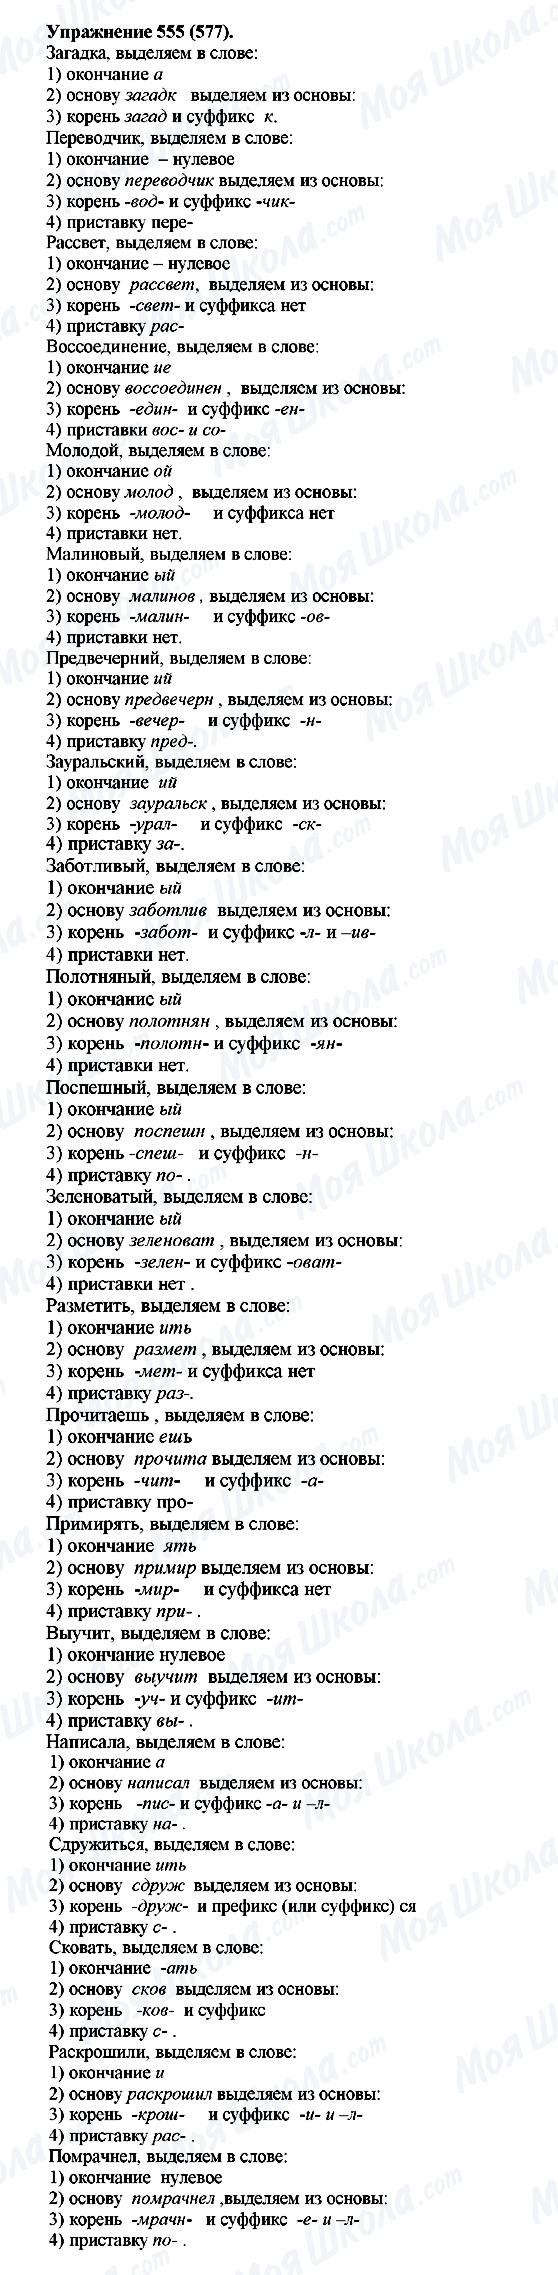 ГДЗ Російська мова 5 клас сторінка 555(577)